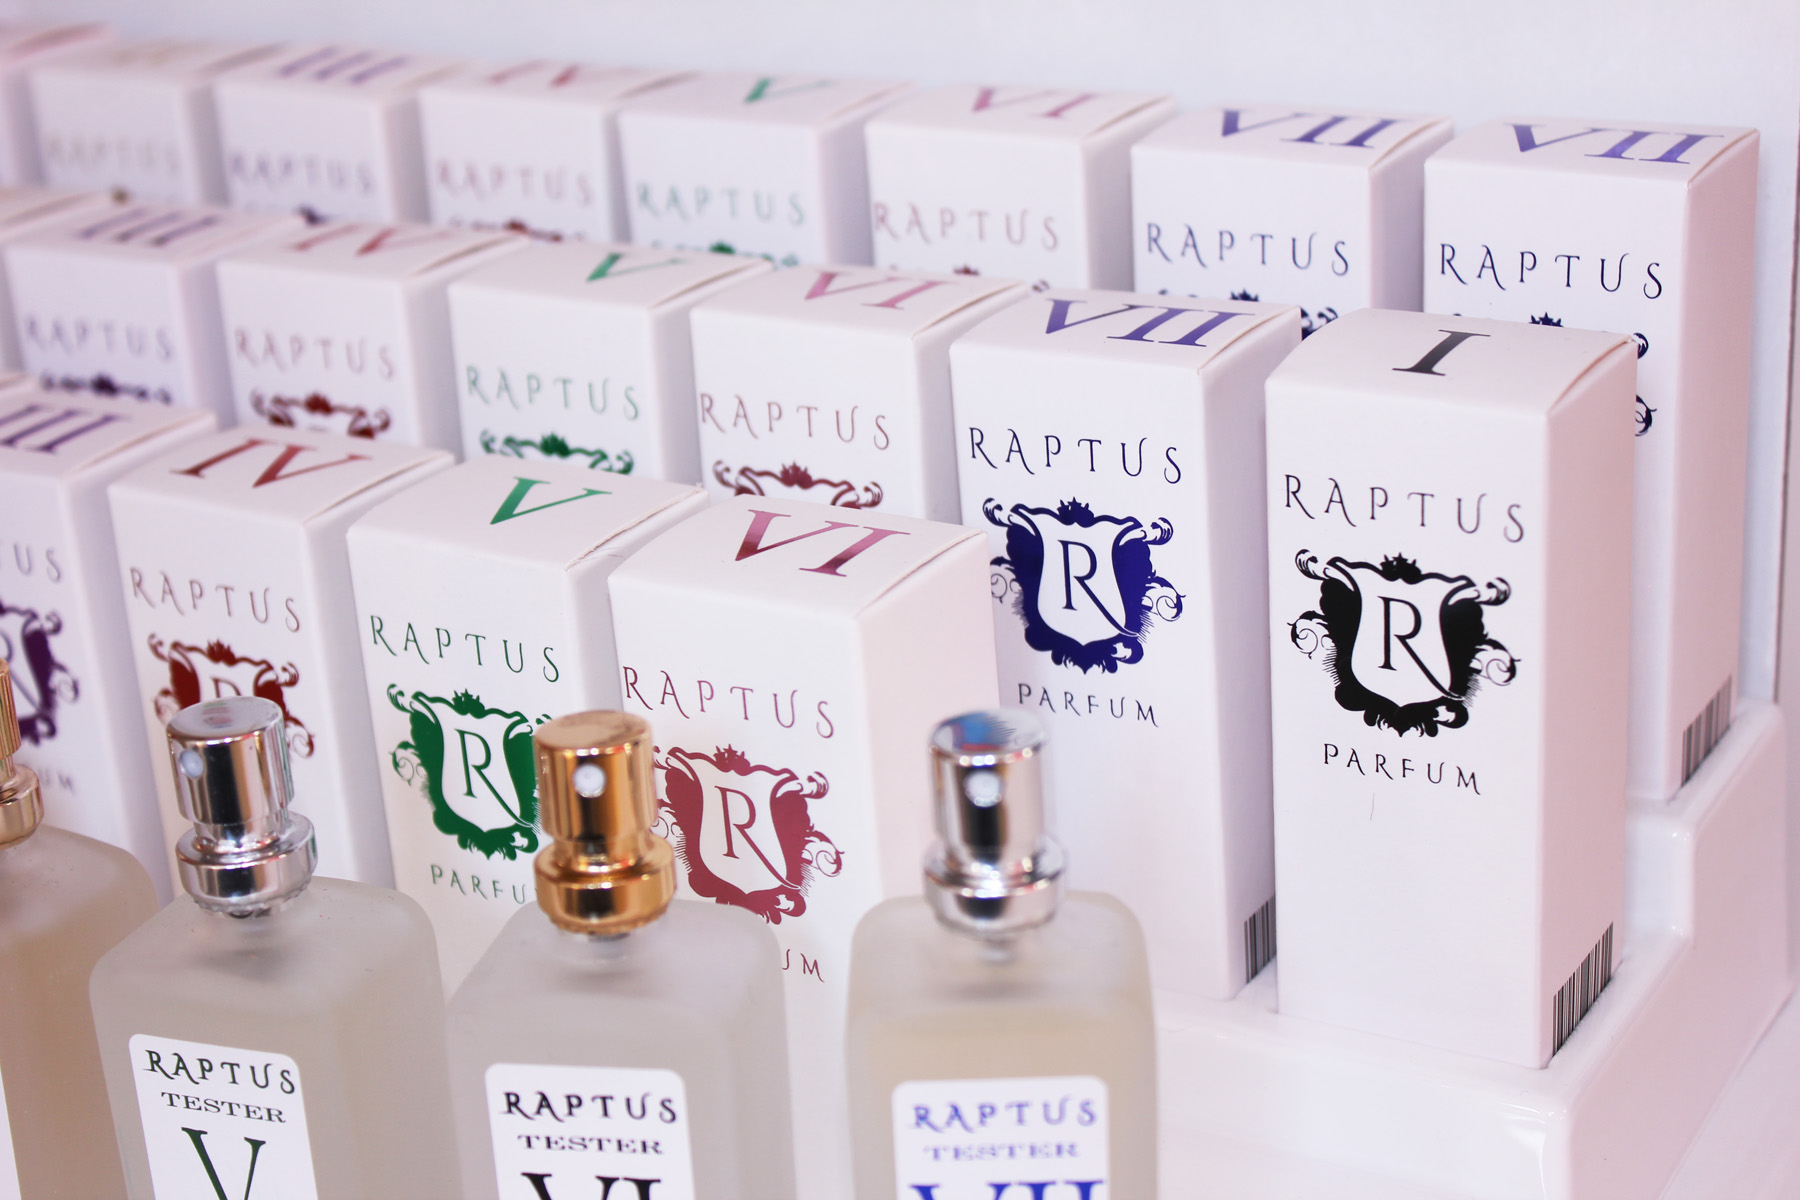 Espositore-Raptus-5 - Raptus Parfum